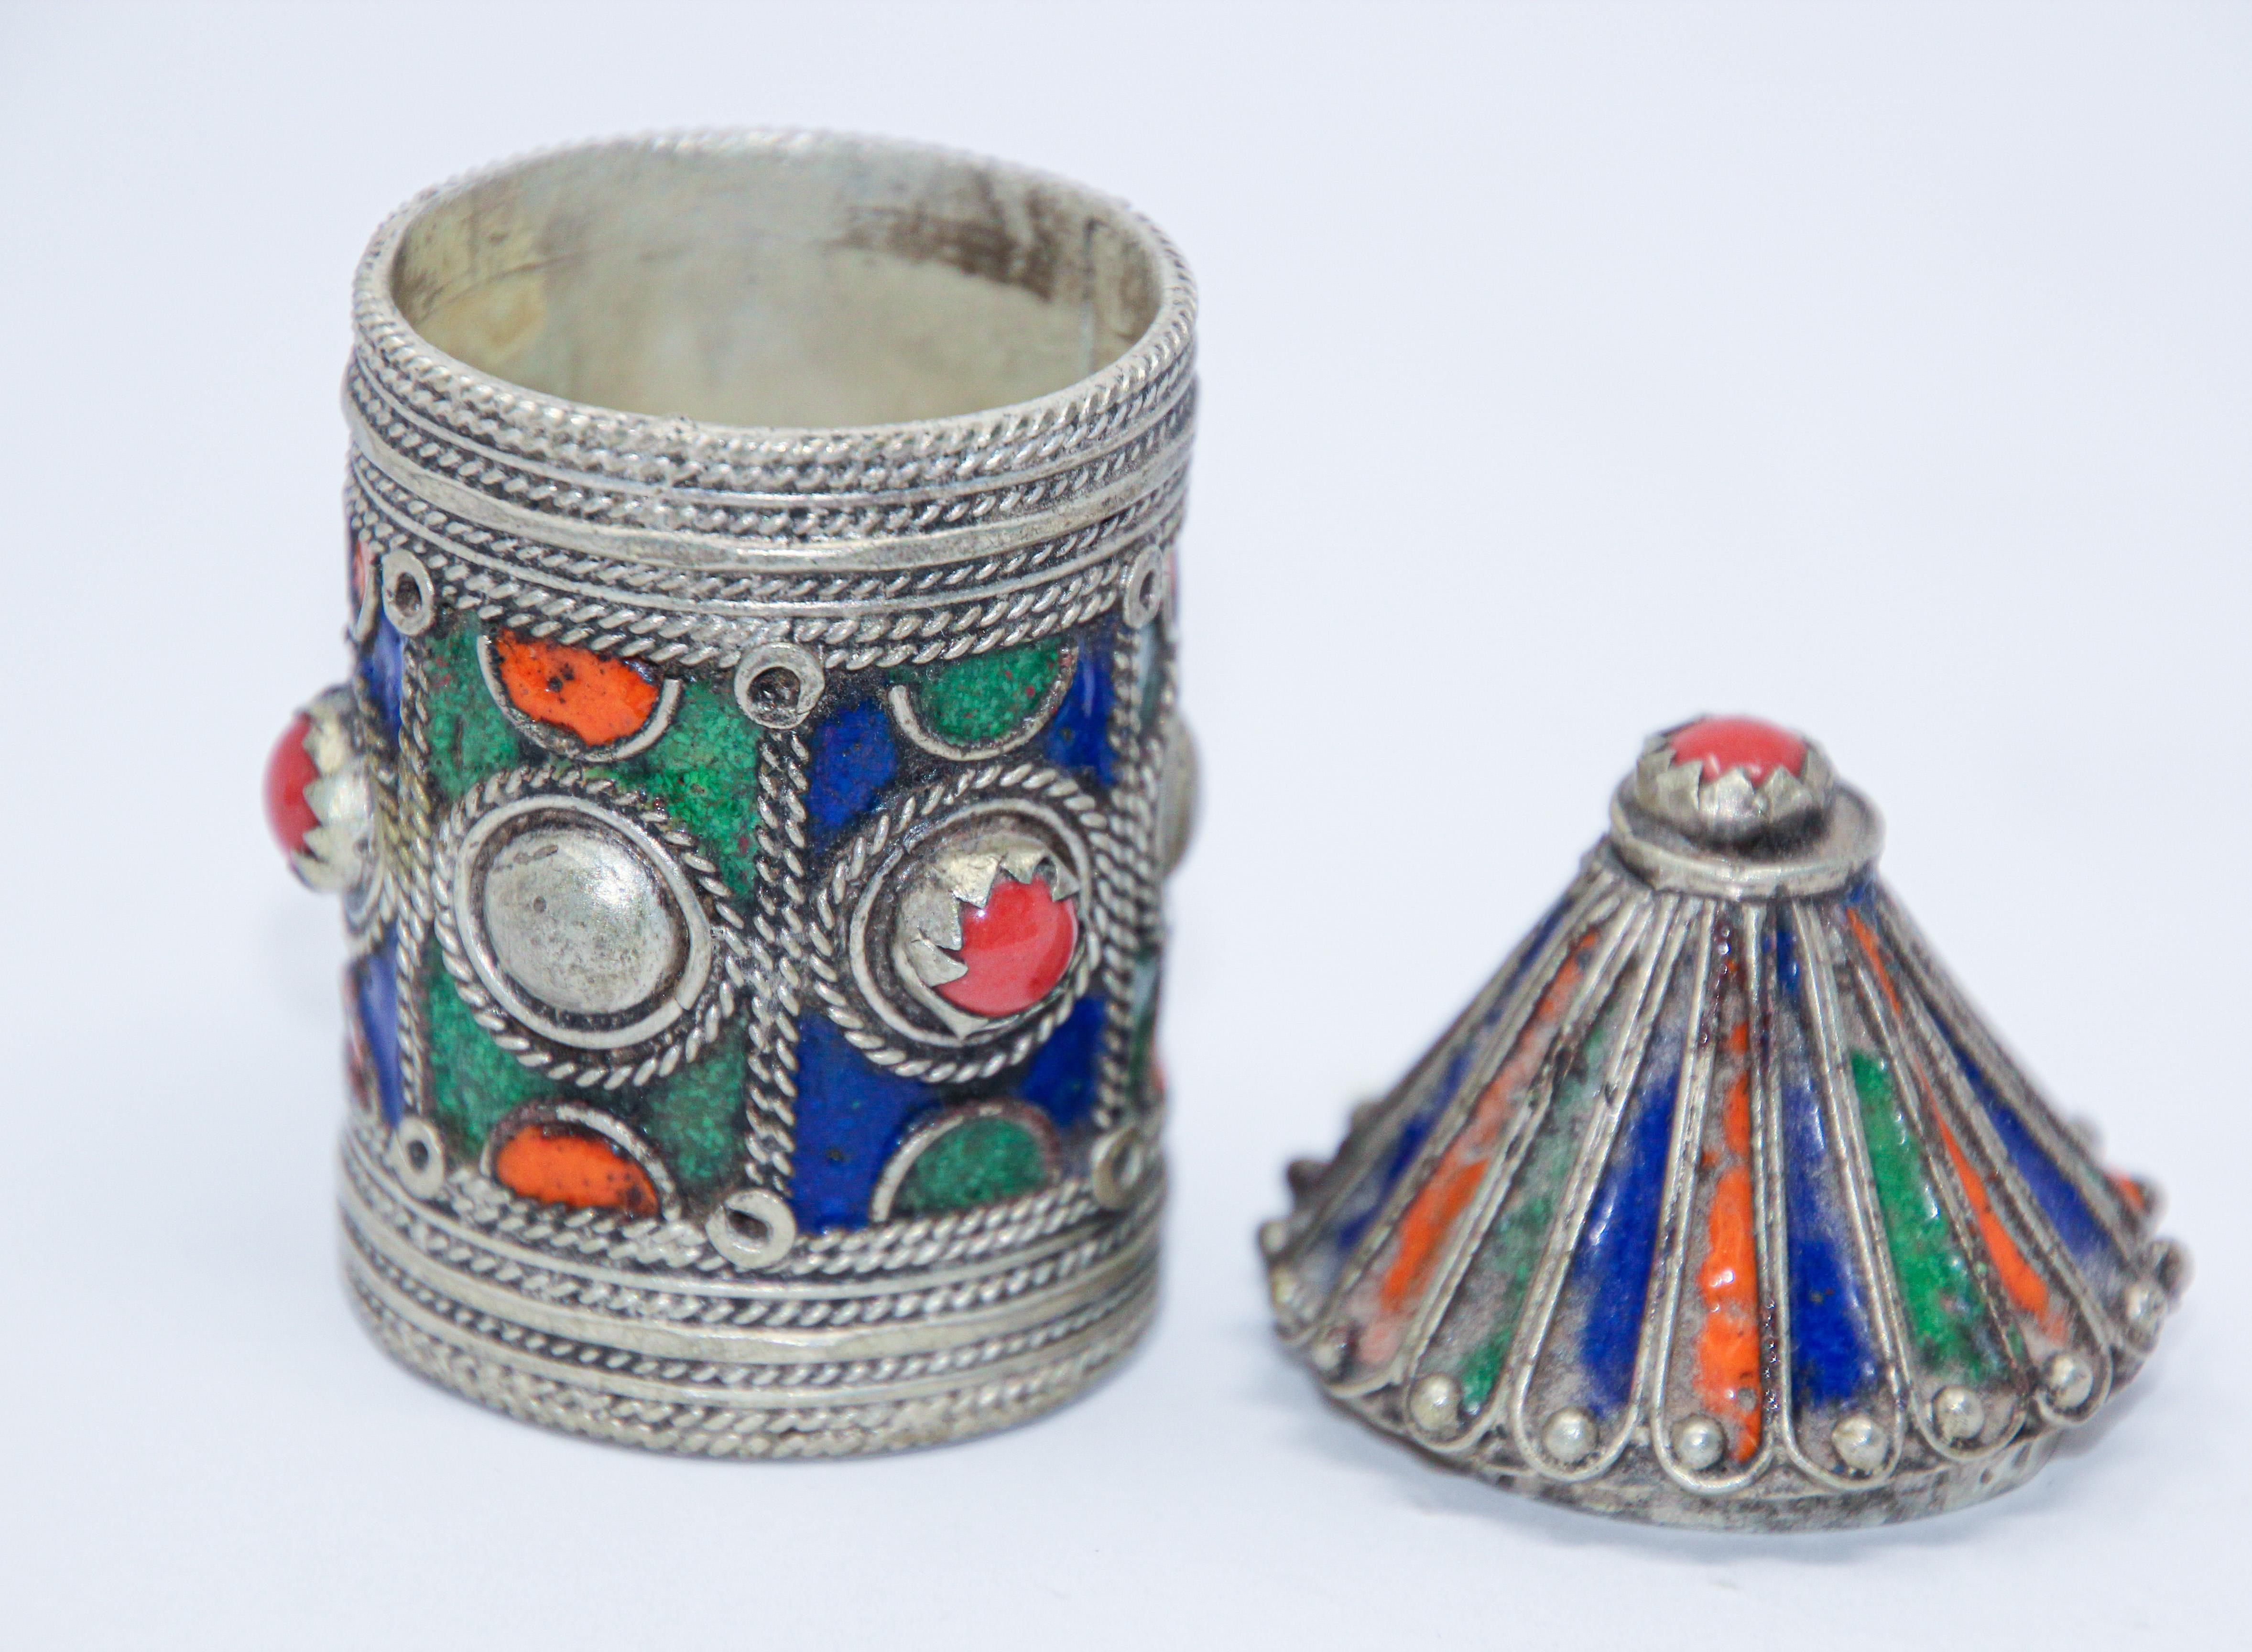 Ancienne boîte berbère kabyle contenant de la poudre libre et de l'eye-liner khôl.
Fabriqué en argent lavé avec émail filigrané en forme de pagode.
Émail et strass en métal argenté avec écailles filigranées et émail appliqué en rouge, vert, orange